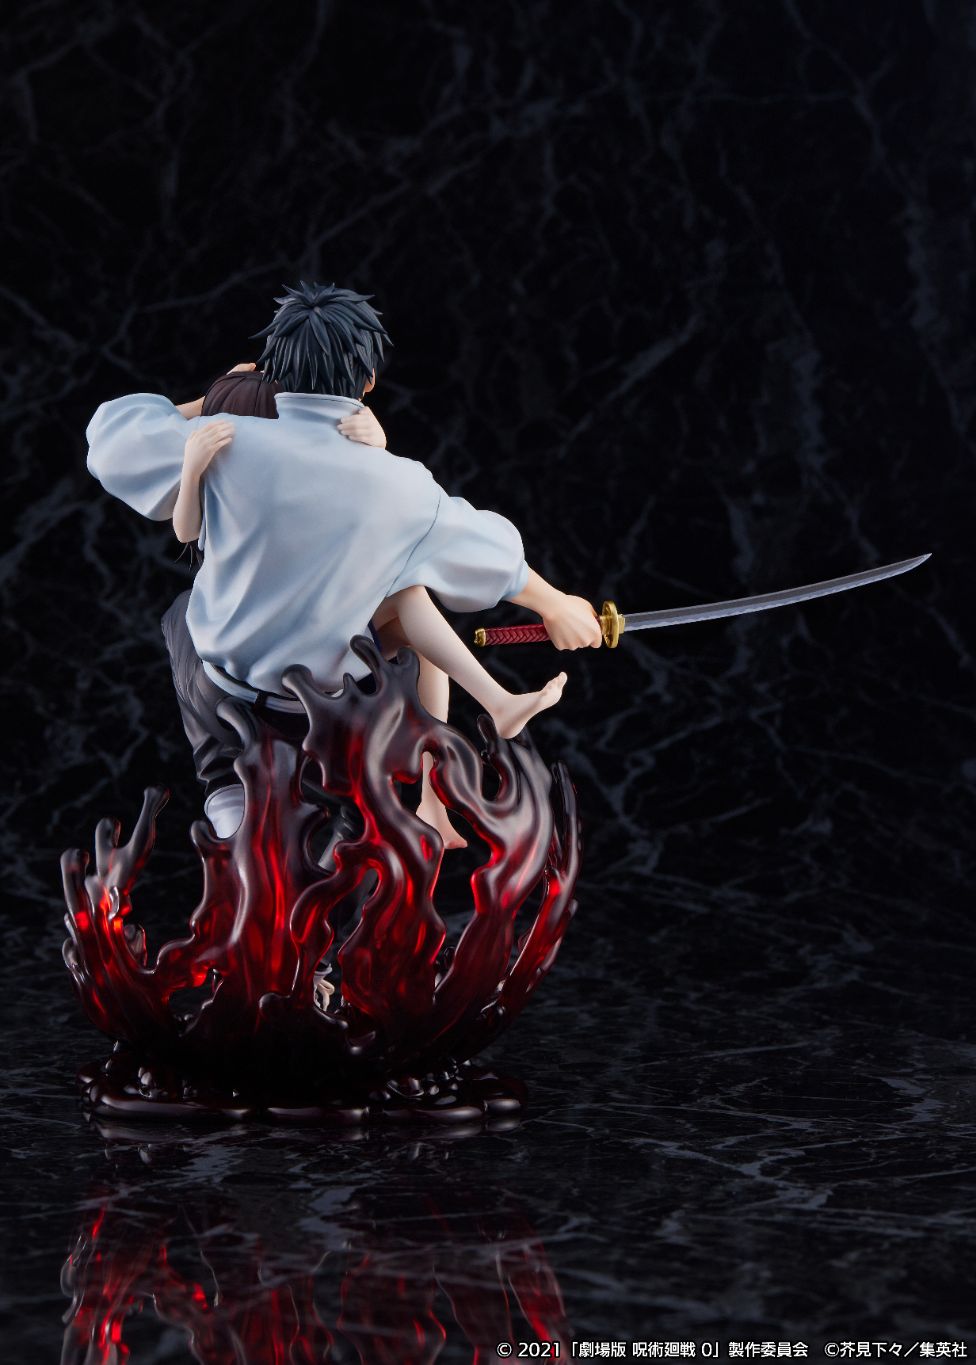 "Jujutsu Kaisen 0: The Movie" Yuta Okkotsu 1/7 Scale Figure | animota